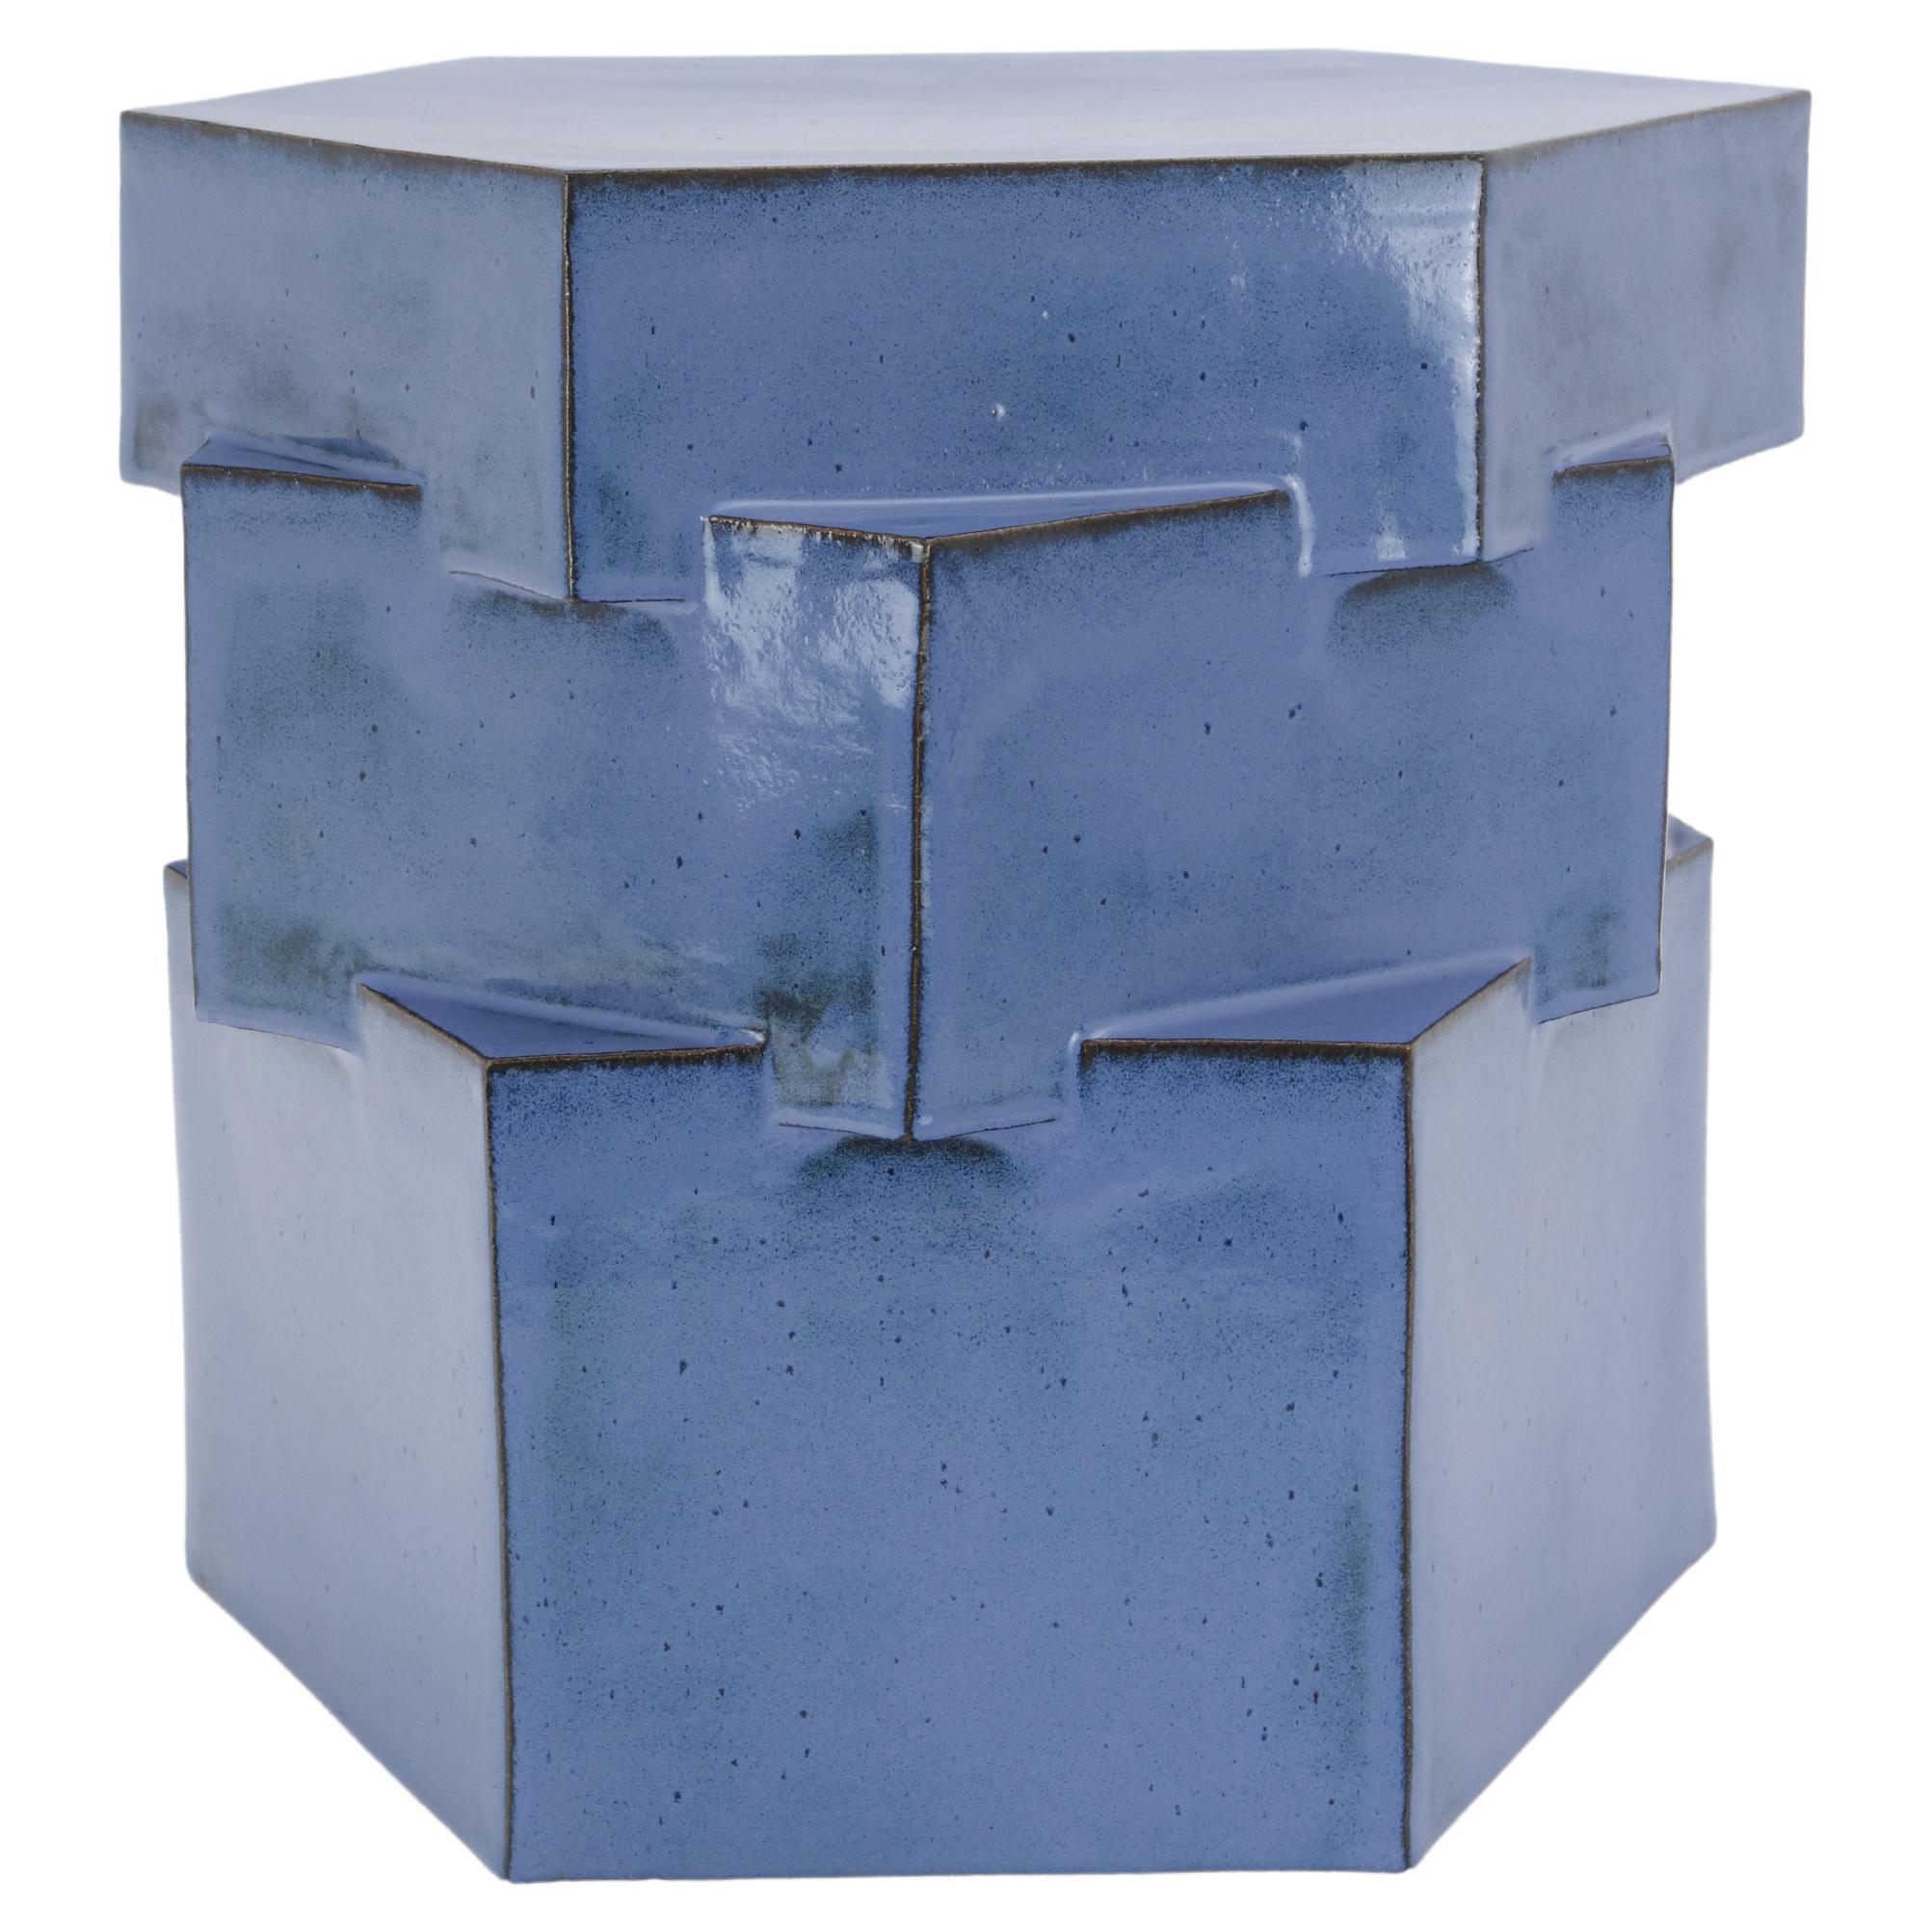 Dreifach-Tier-Beistelltisch aus Keramik in gesprenkeltem Blau von Bzippy